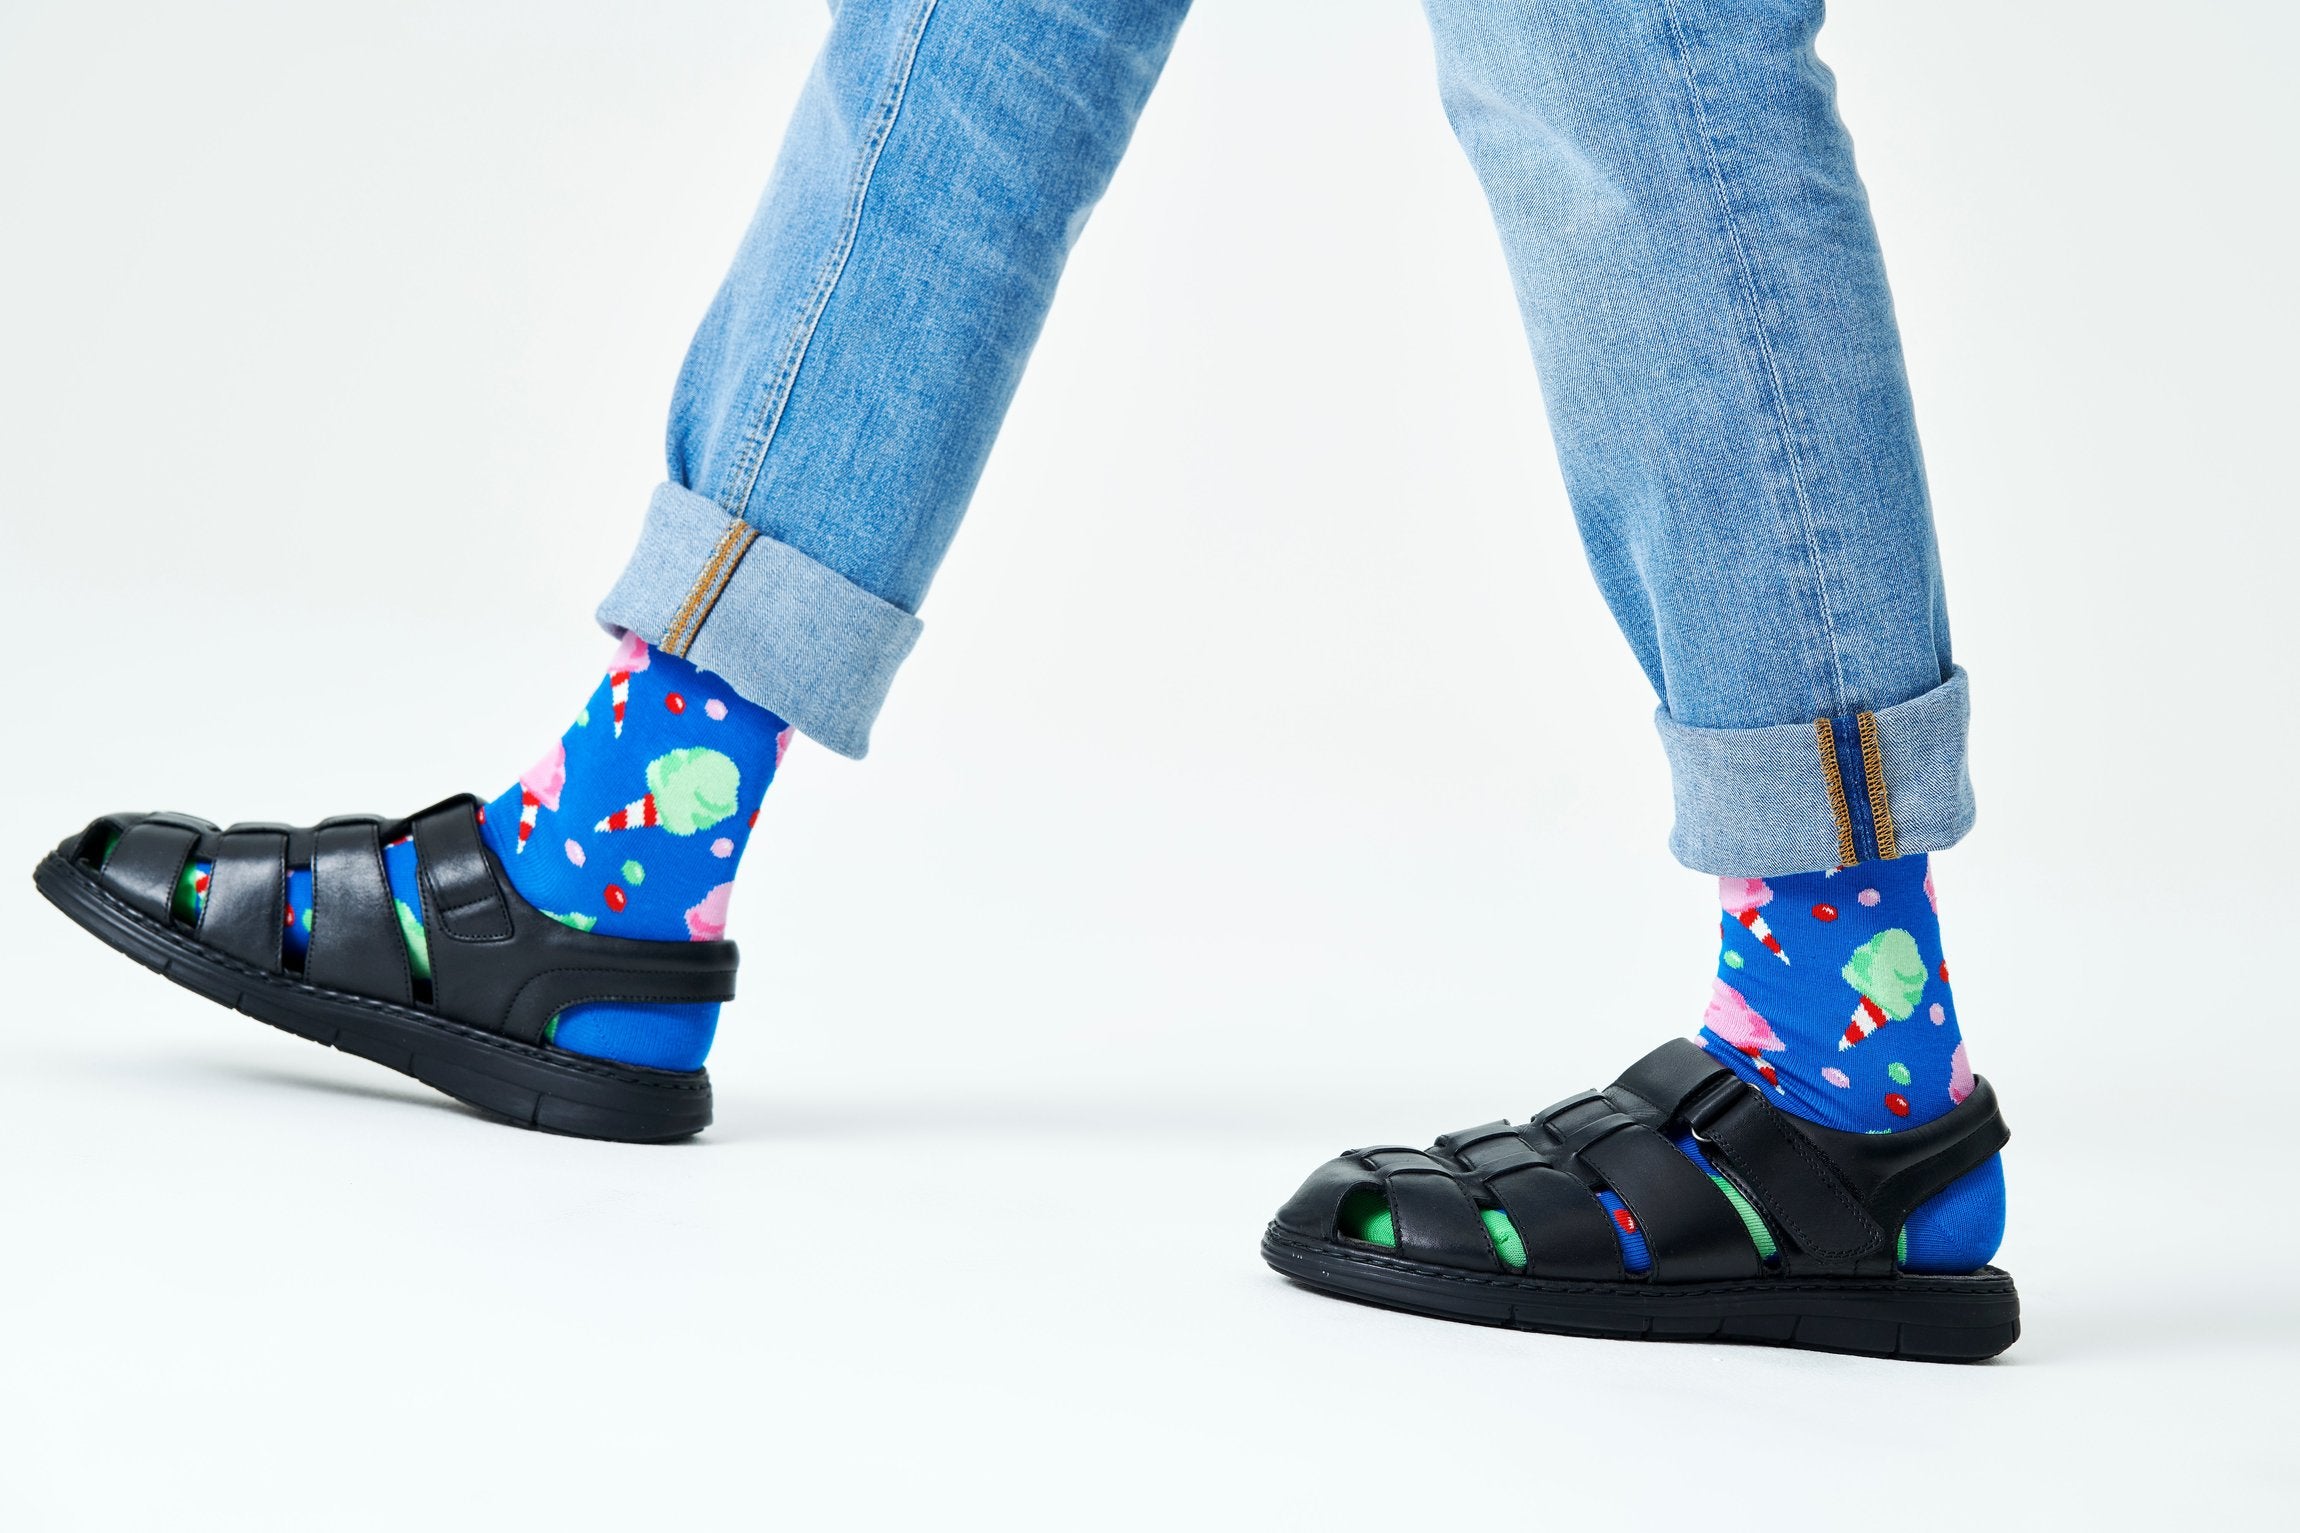 Modré ponožky Happy Socks s cukrovou vatou, vzor Cotton Candy